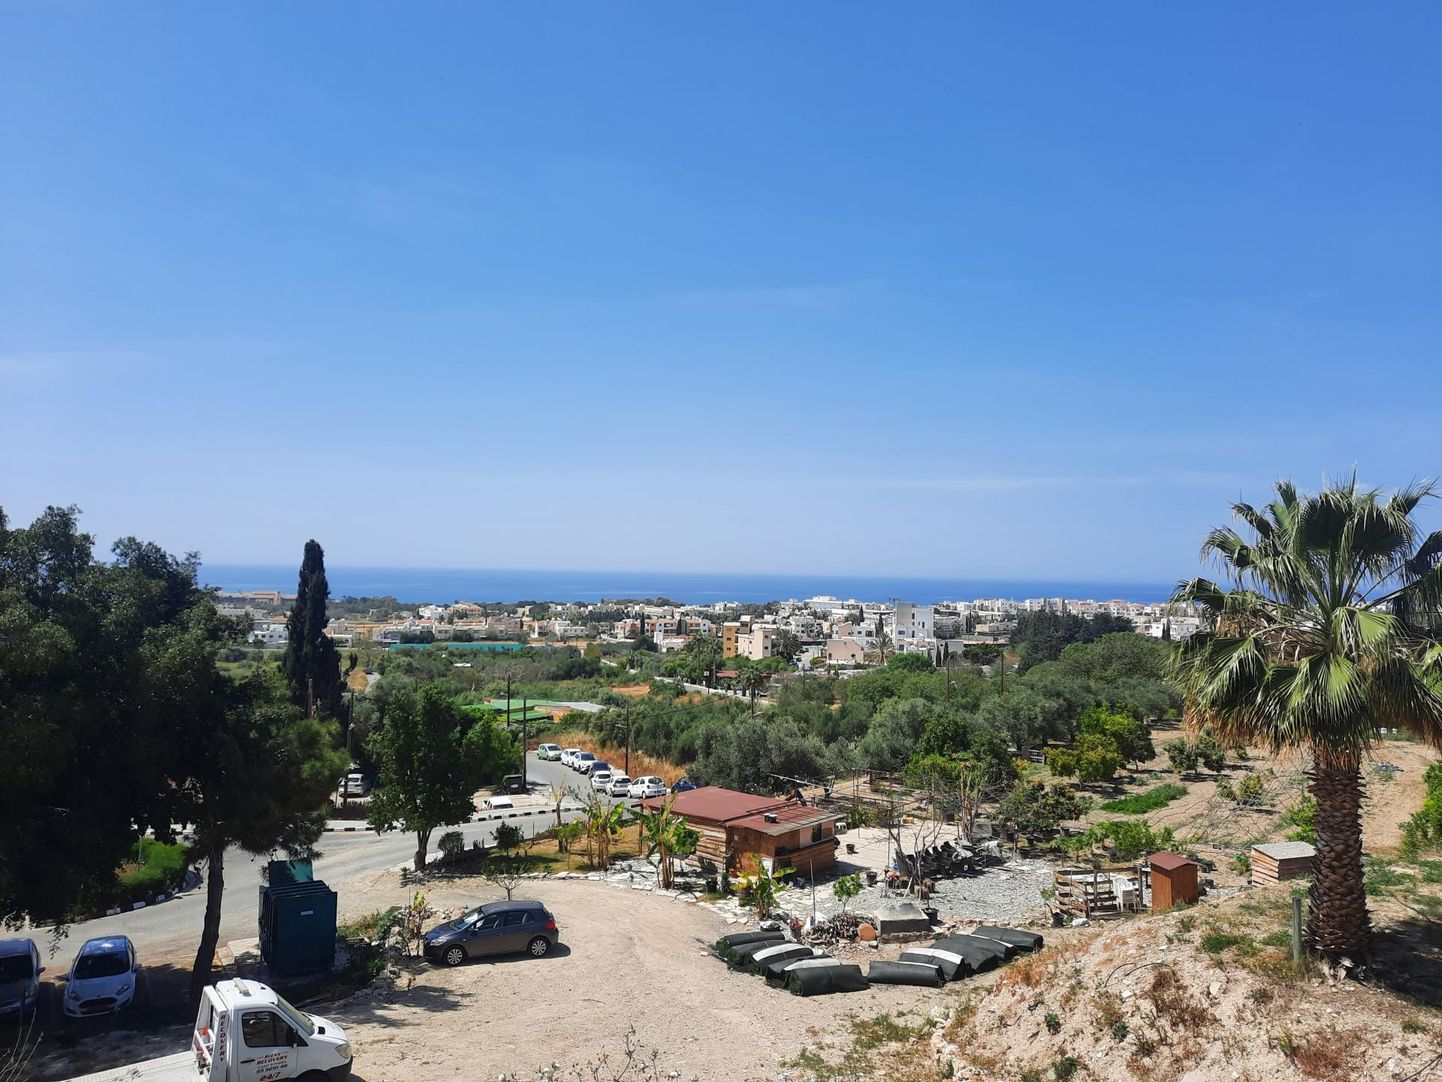 Vaade Paphose linnast rannale.